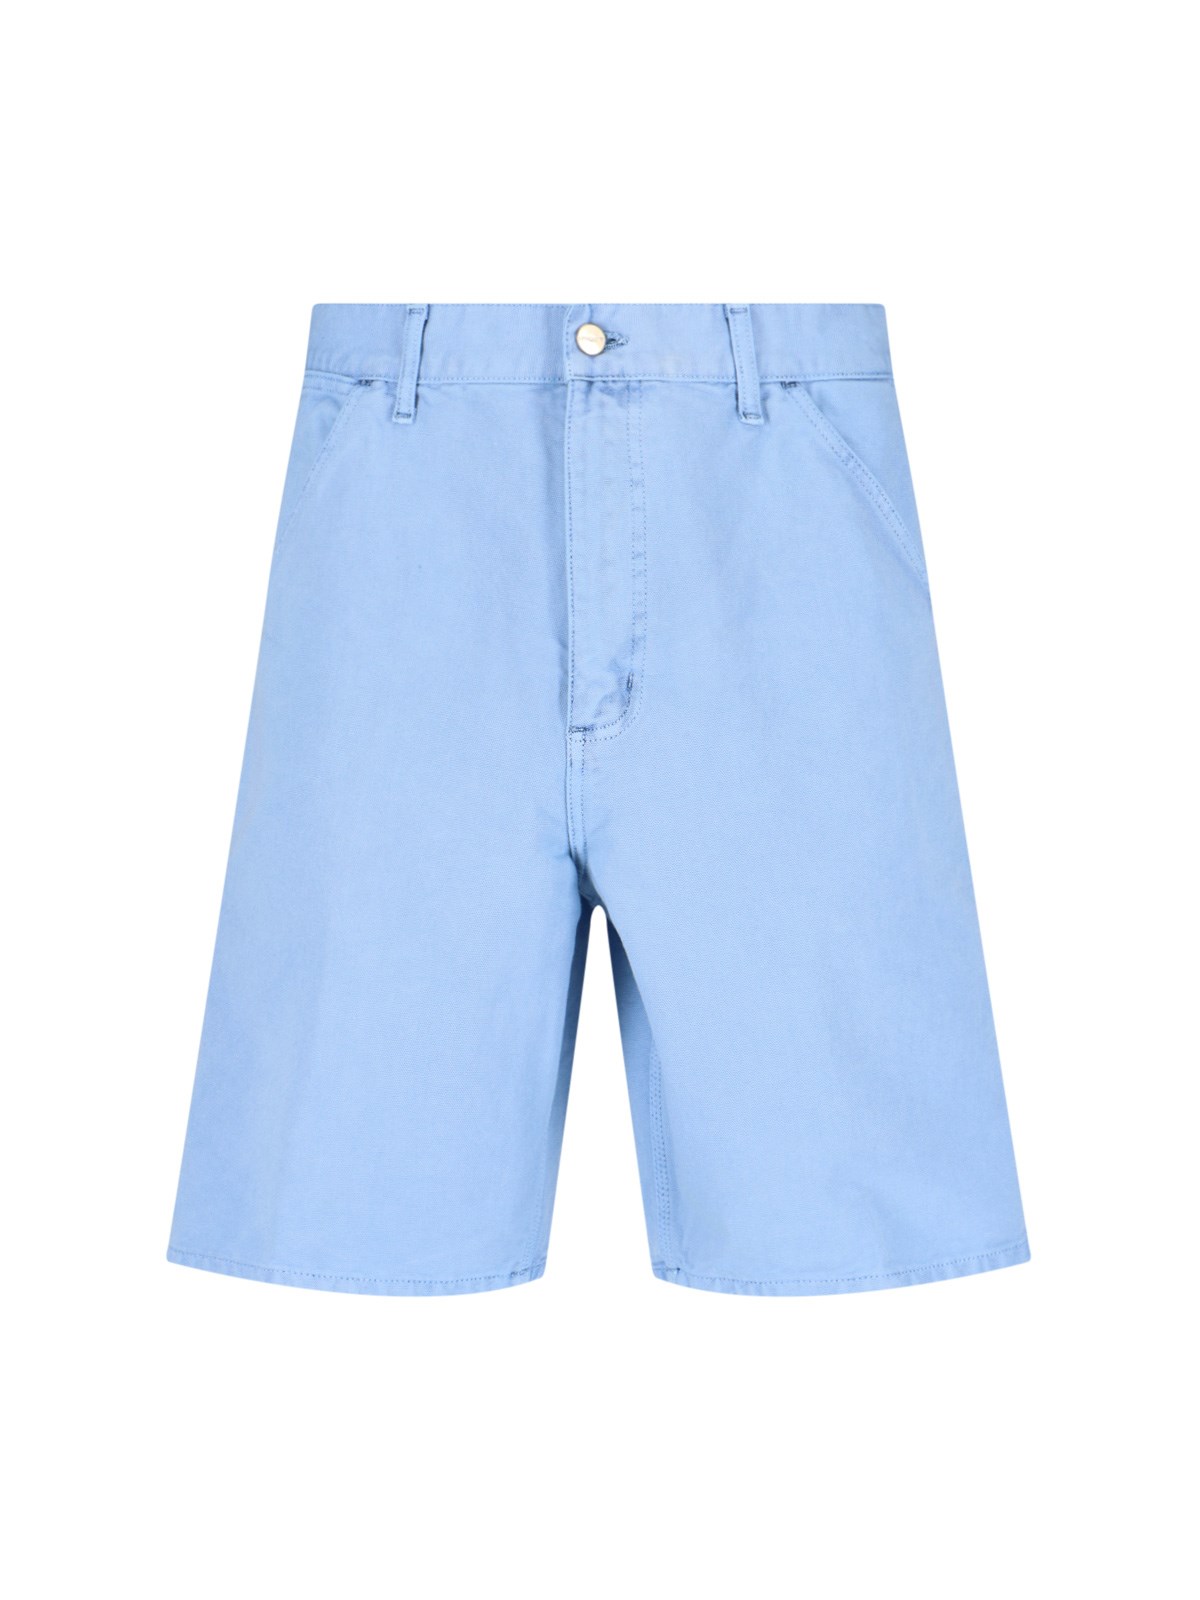 Carhartt Denim Shorts In Light Blue